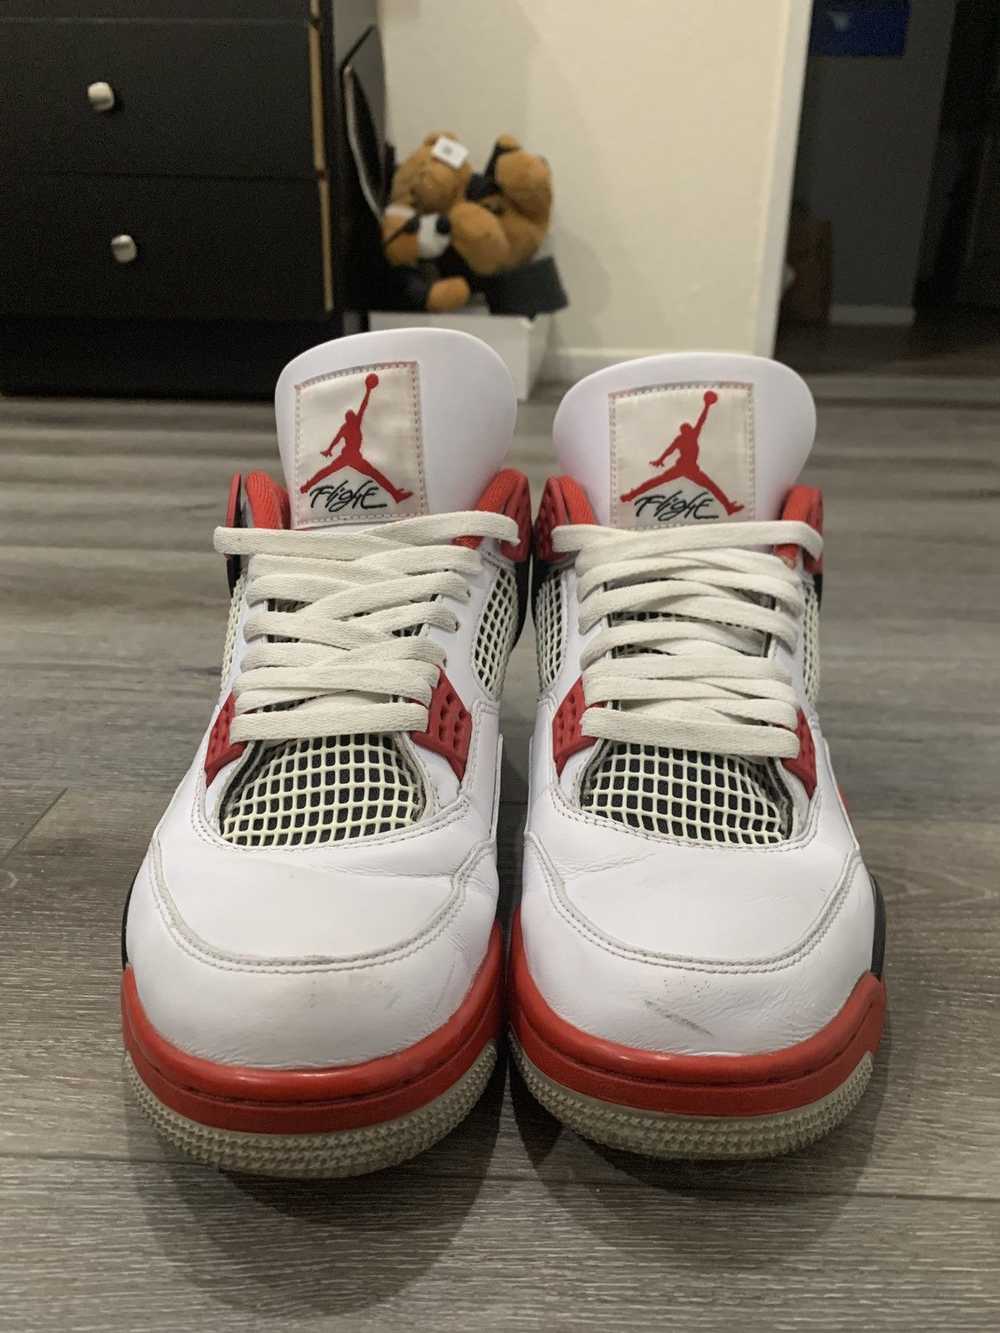 Jordan Brand × Nike Air Jordan 4 Fire Red 10.5 - image 3